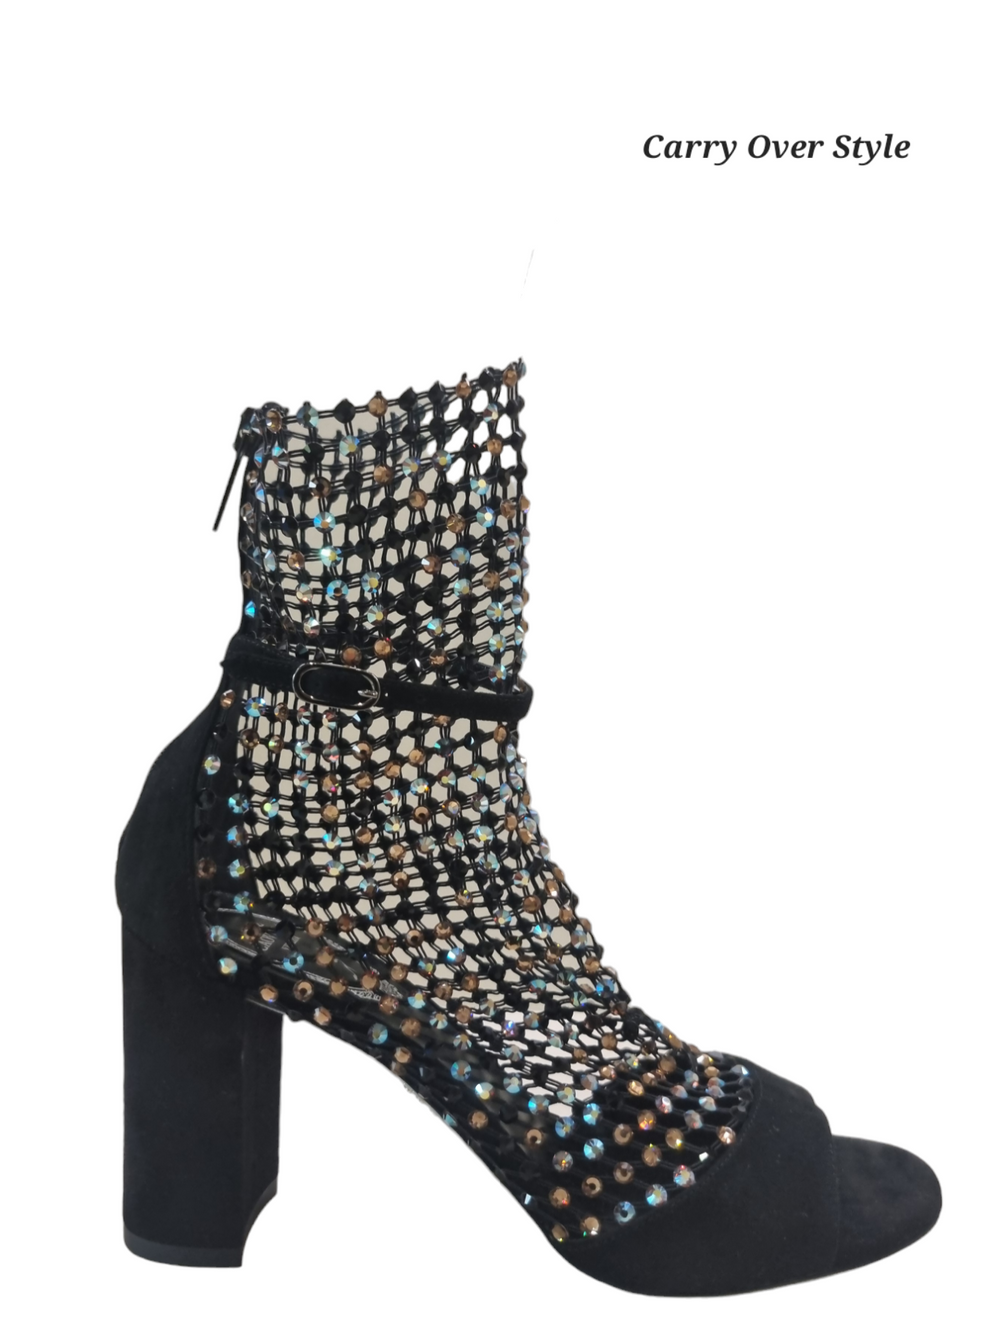 Galaxia Block Heel Sandals - Rene Caovilla - Liberty Shoes Australia